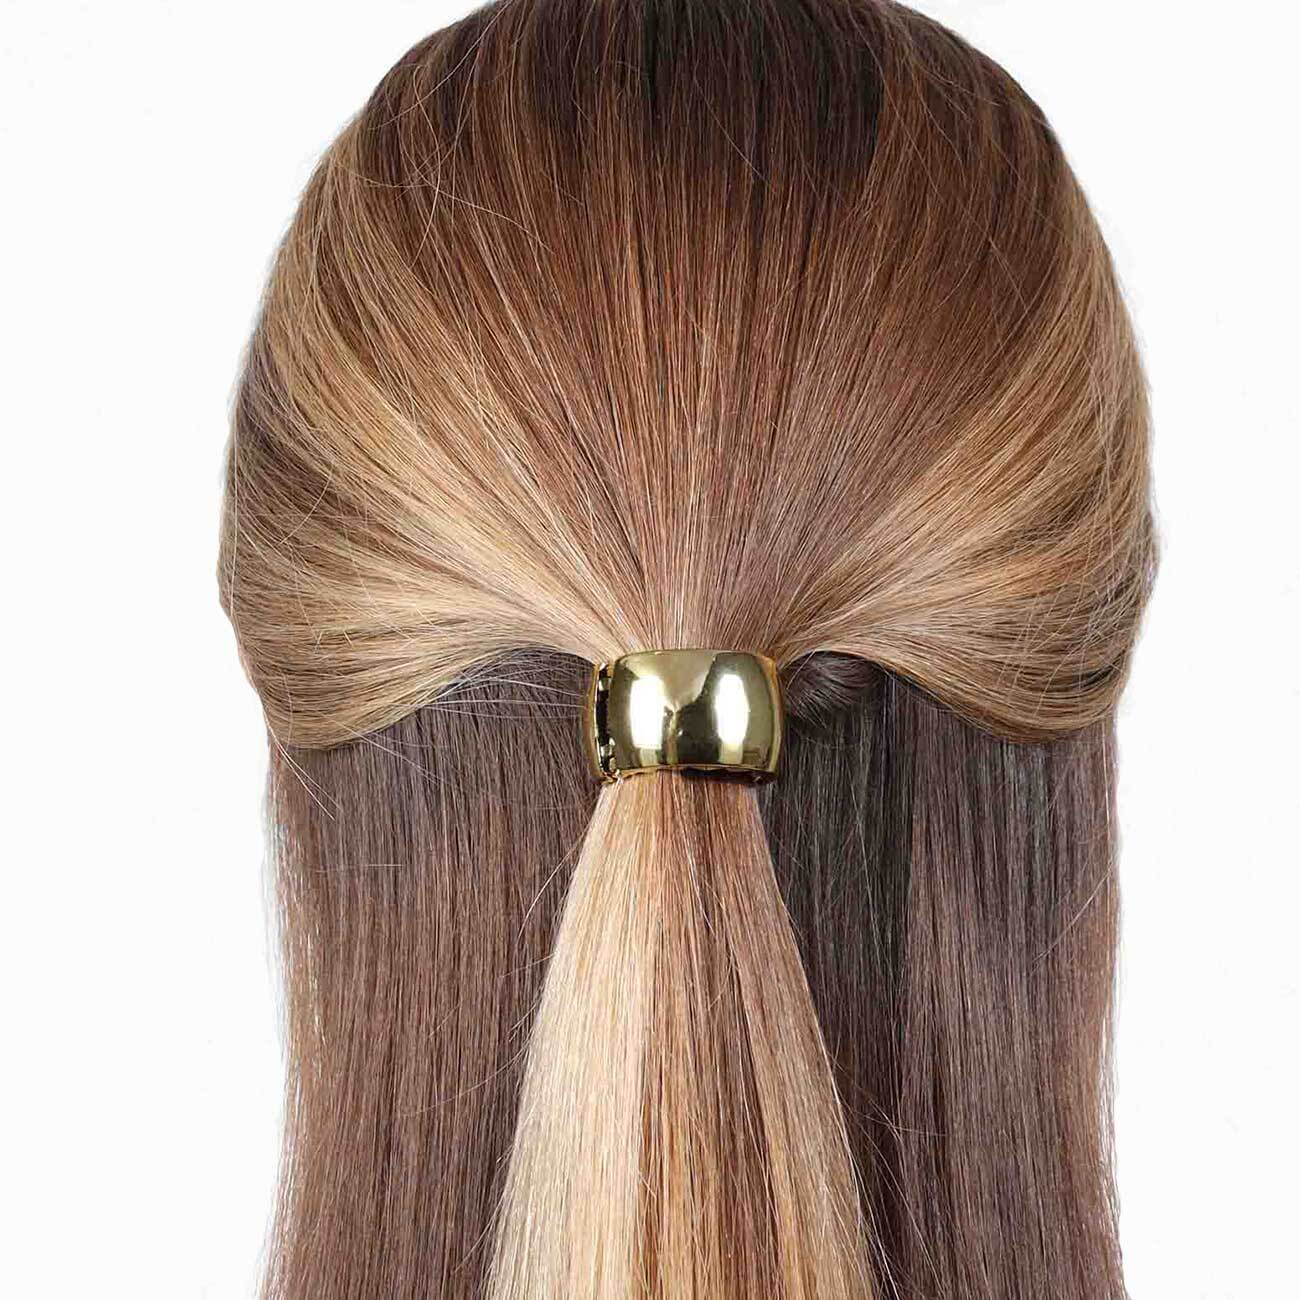 Резинка для волос, 5 см, с кольцом-зажимом, пластик, золотистая, Кольцо, Hairstyle изображение № 1